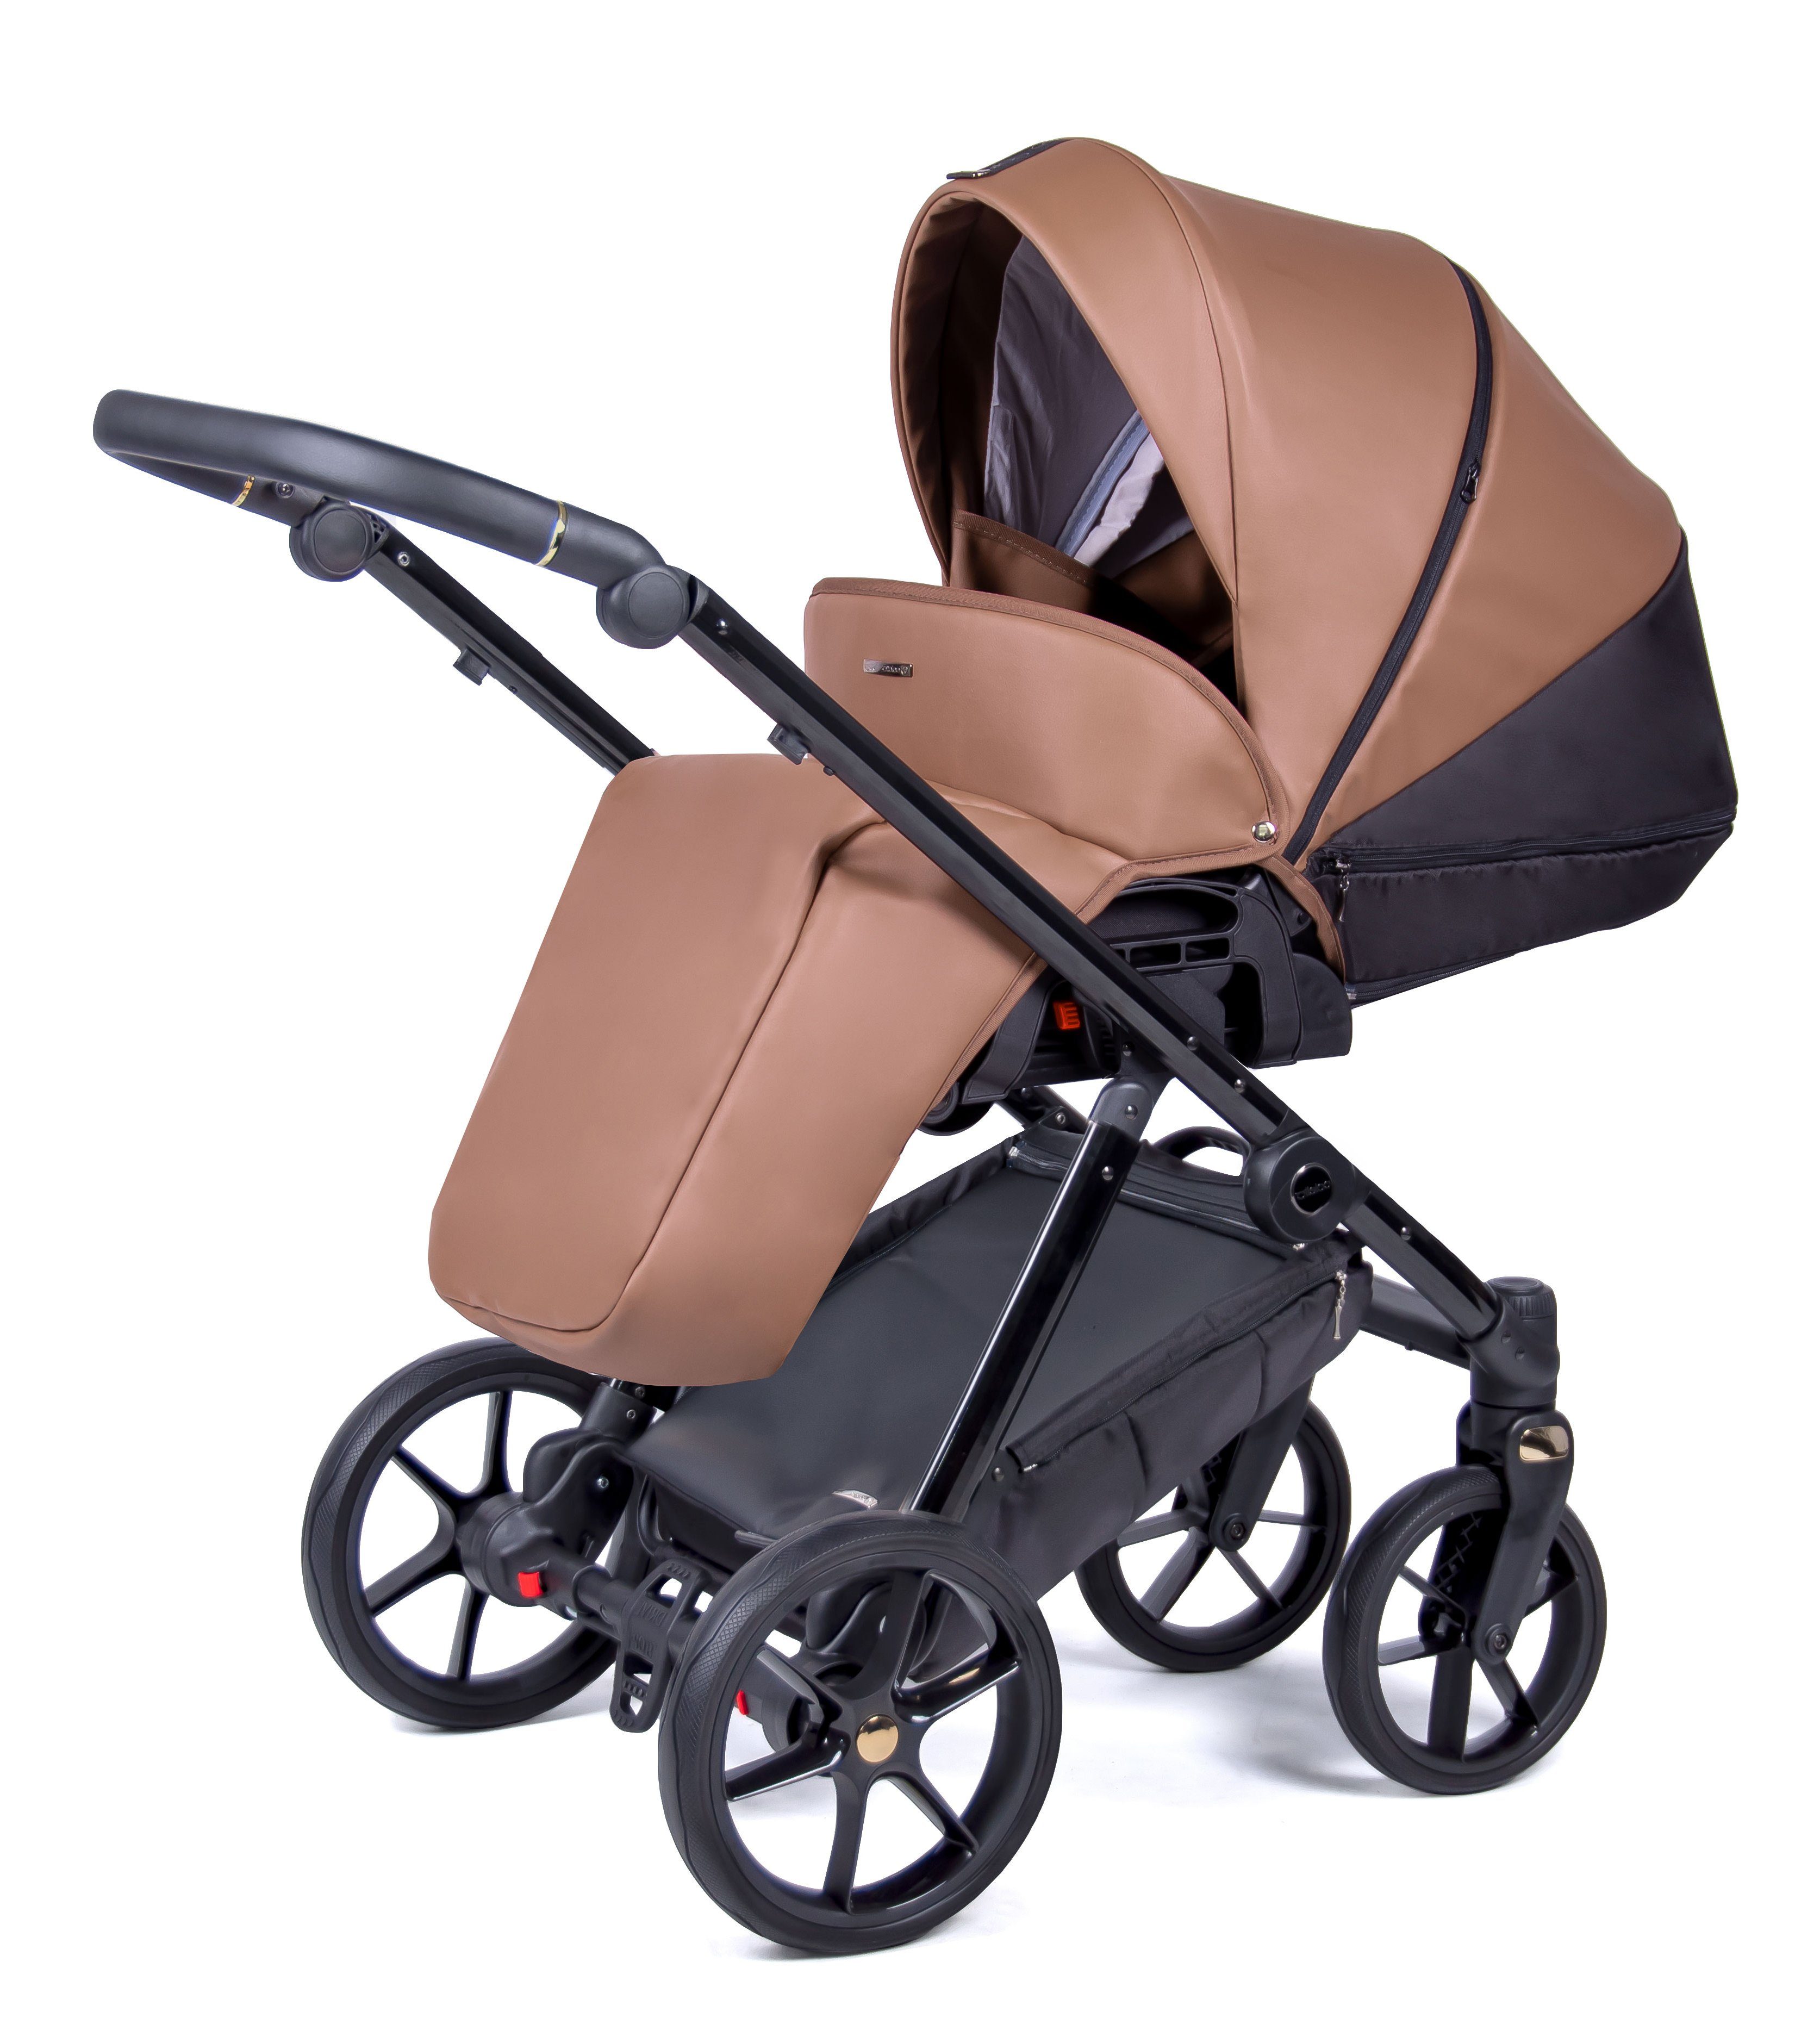 Designs in babies-on-wheels 1 Kinderwagen-Set Braun 12 14 schwarz Kombi-Kinderwagen Premium Teile 2 - in - = Axxis Gestell